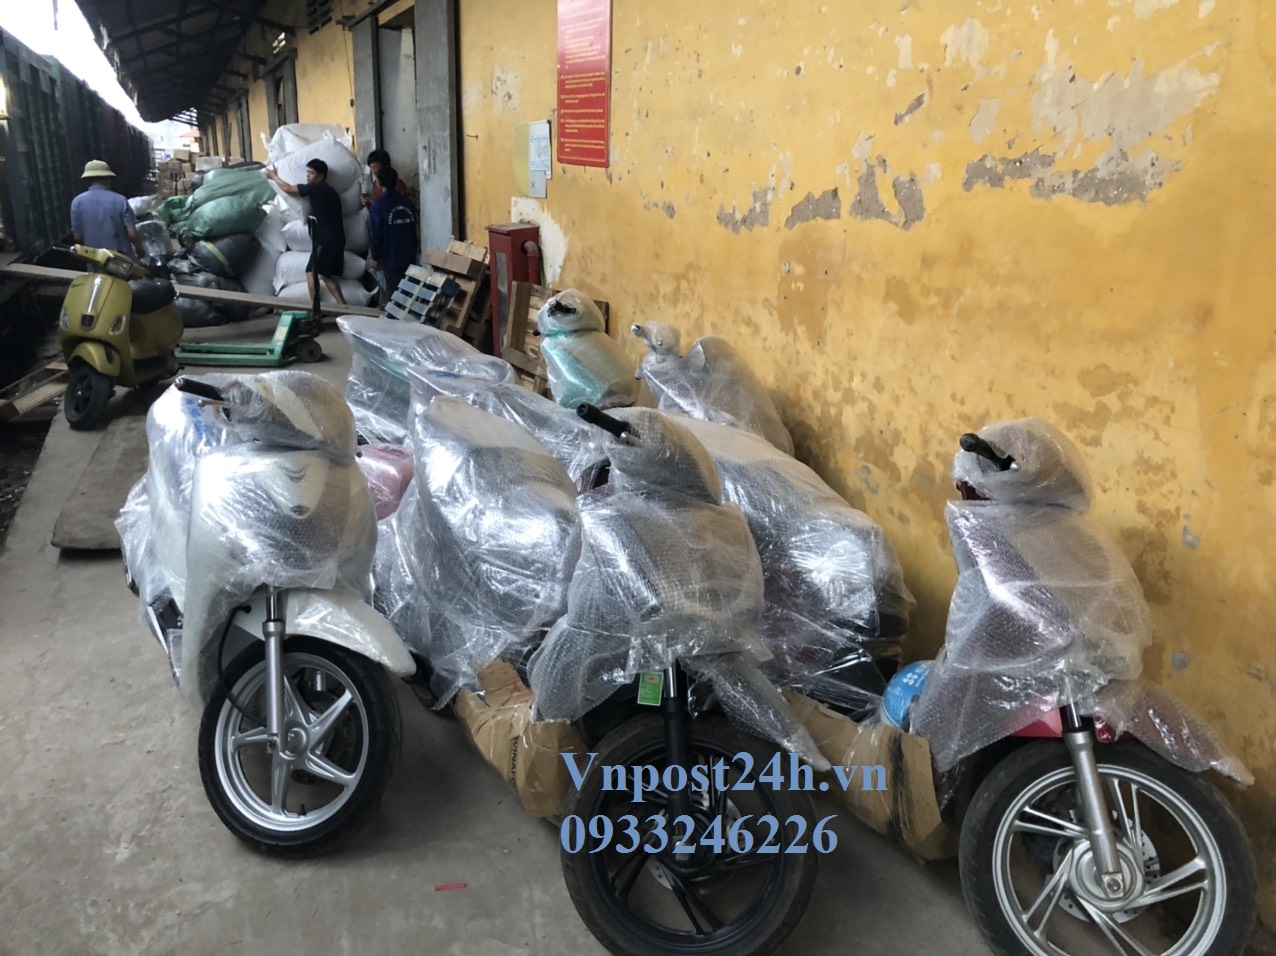 Báo giá gửi xe máy Hà Nội – Sài Gòn